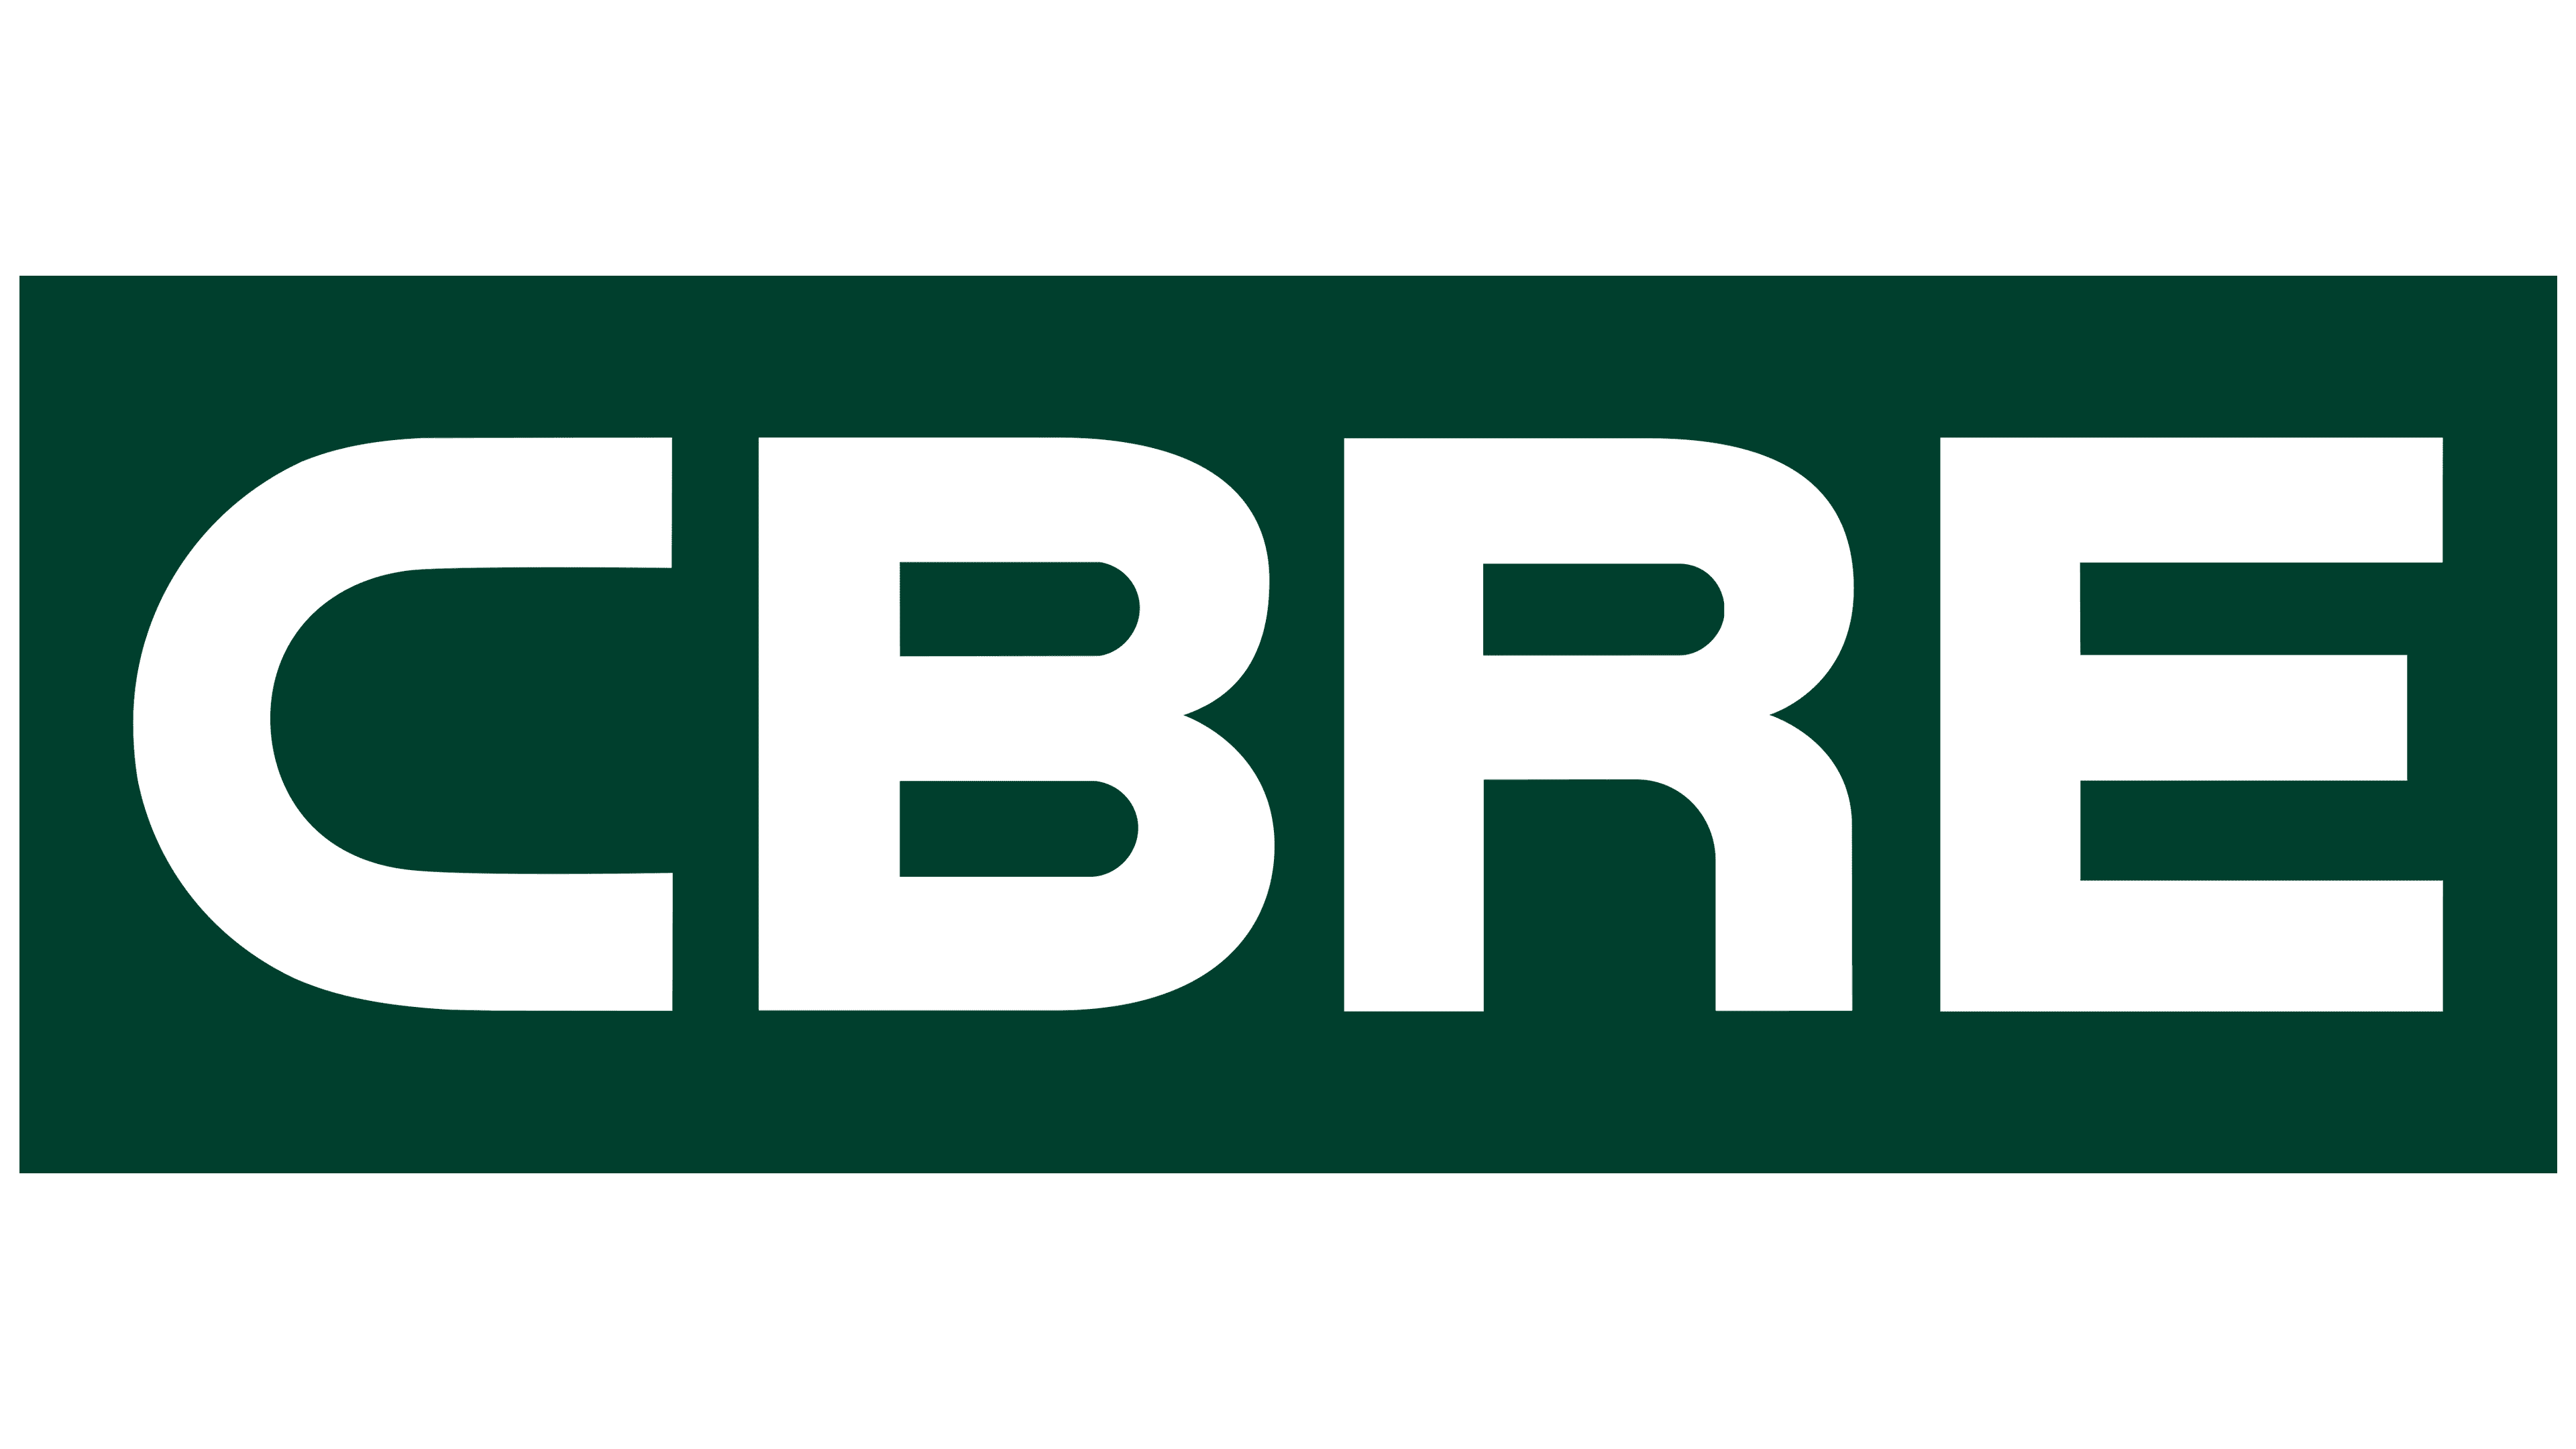 CBRE-New-Logo